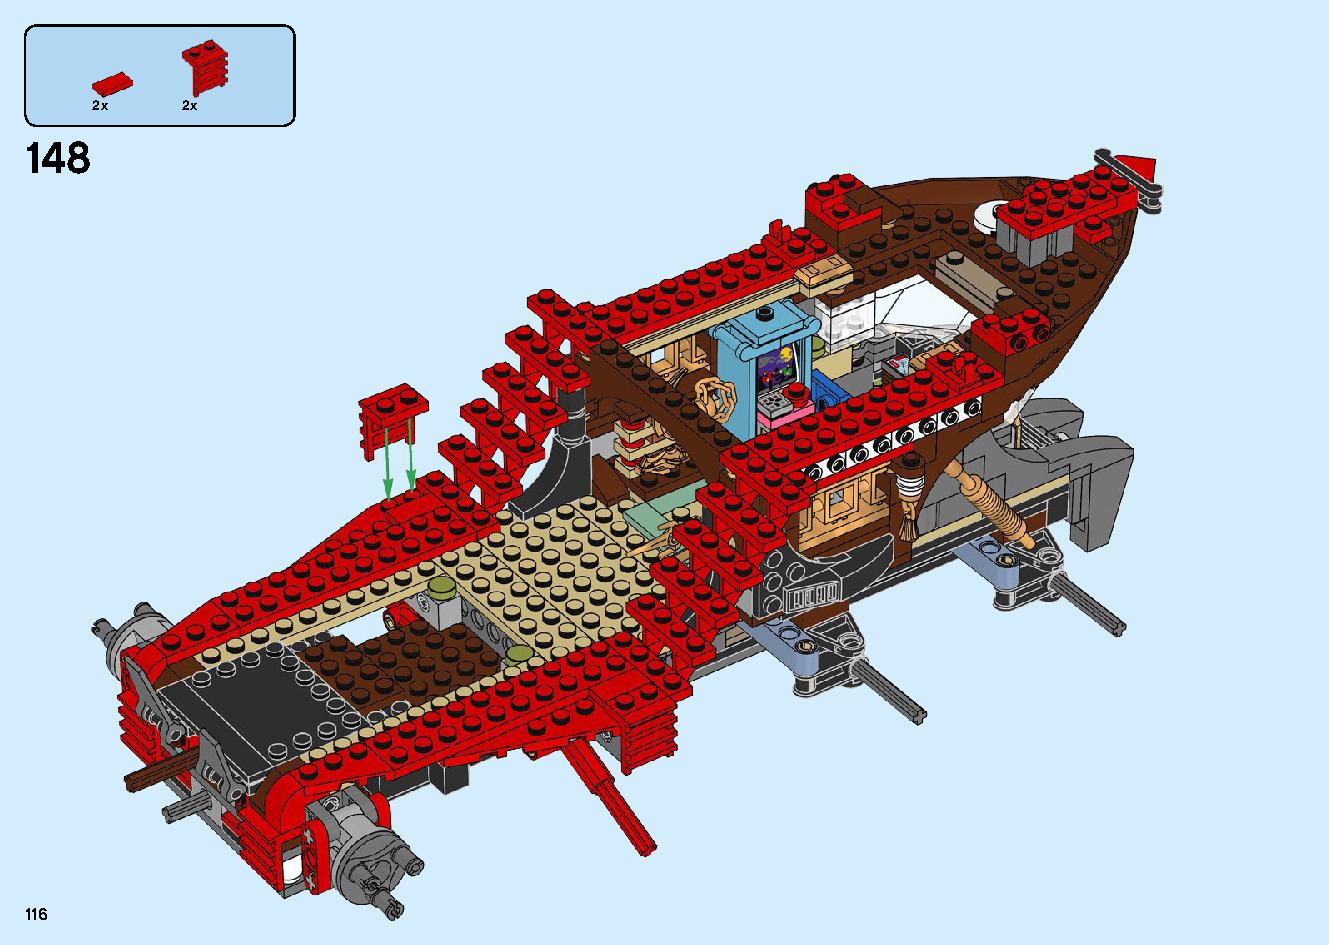 陸上戦艦バウンティ号 70677 レゴの商品情報 レゴの説明書・組立方法 116 page